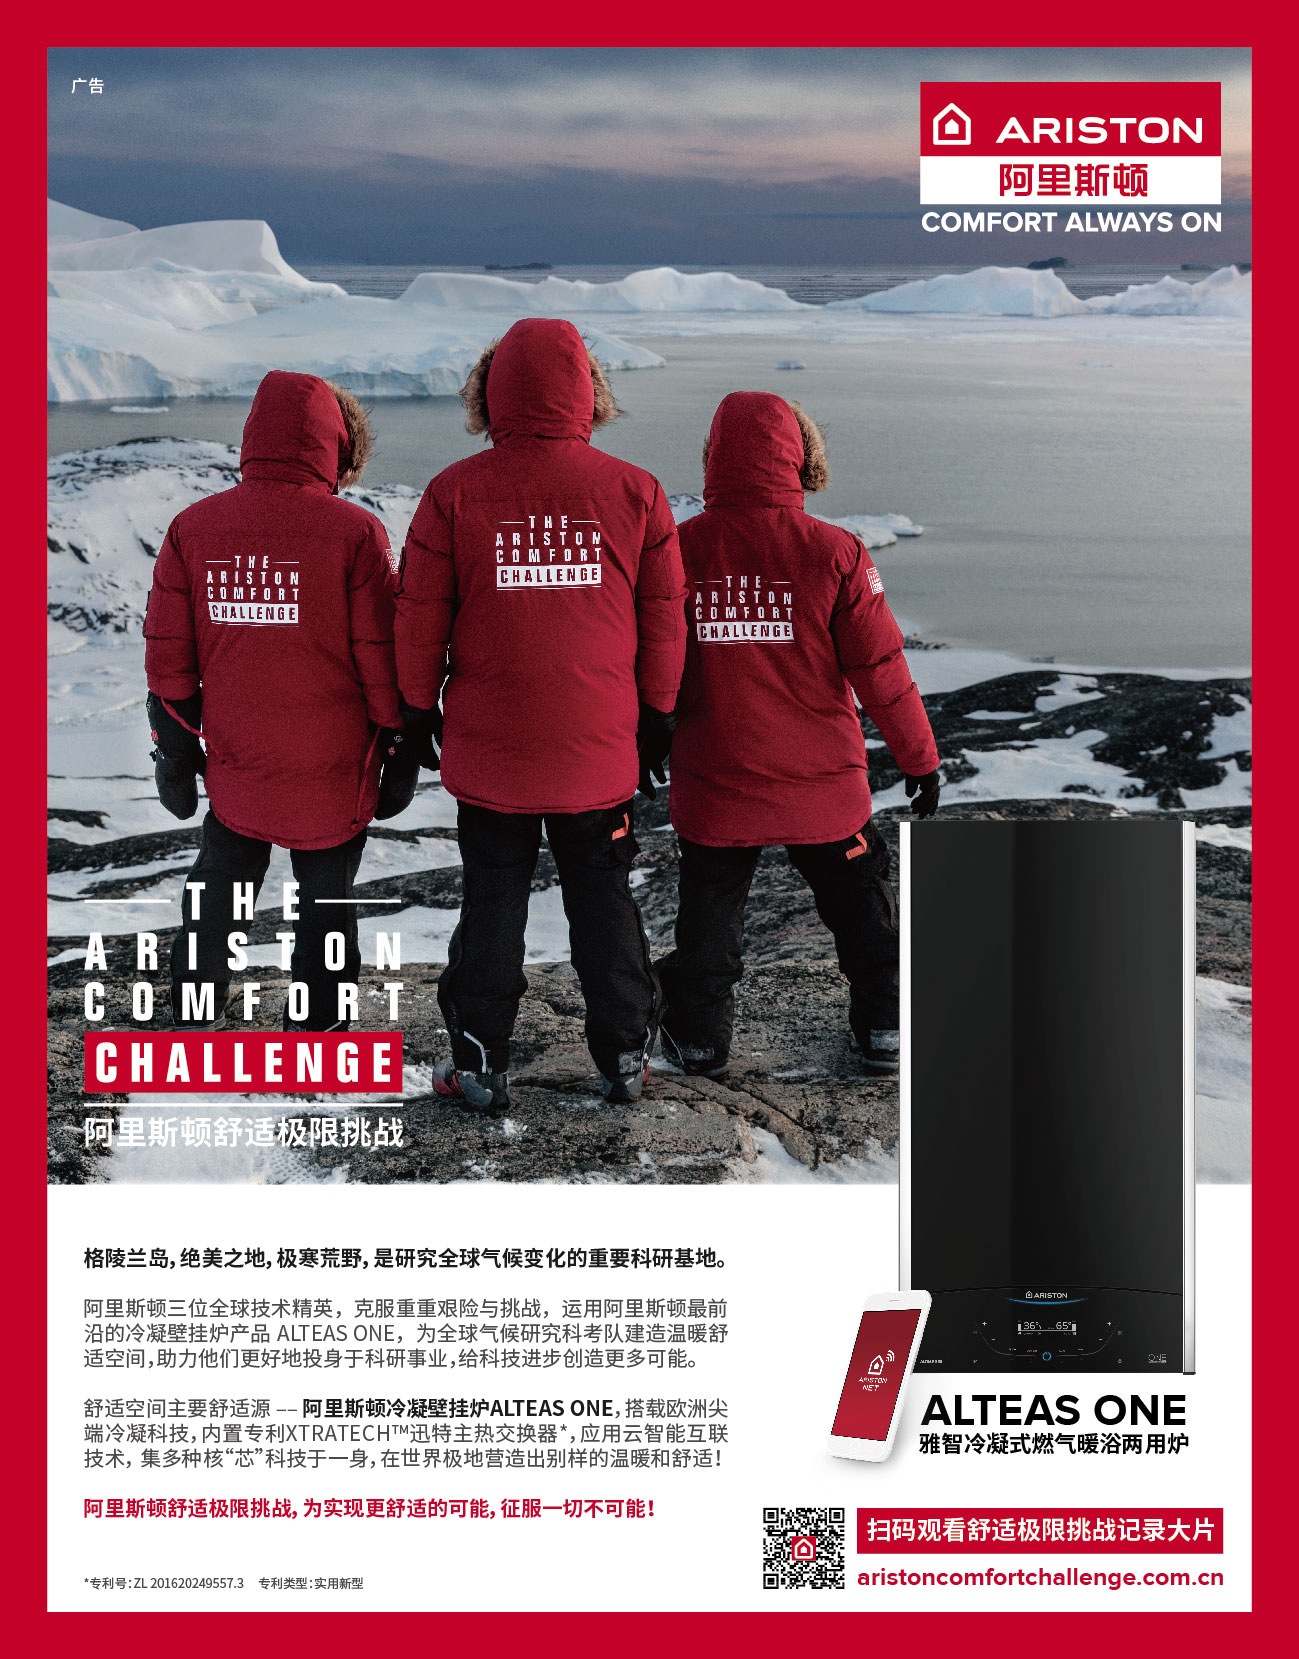 Ariston worldwide campaign, China.